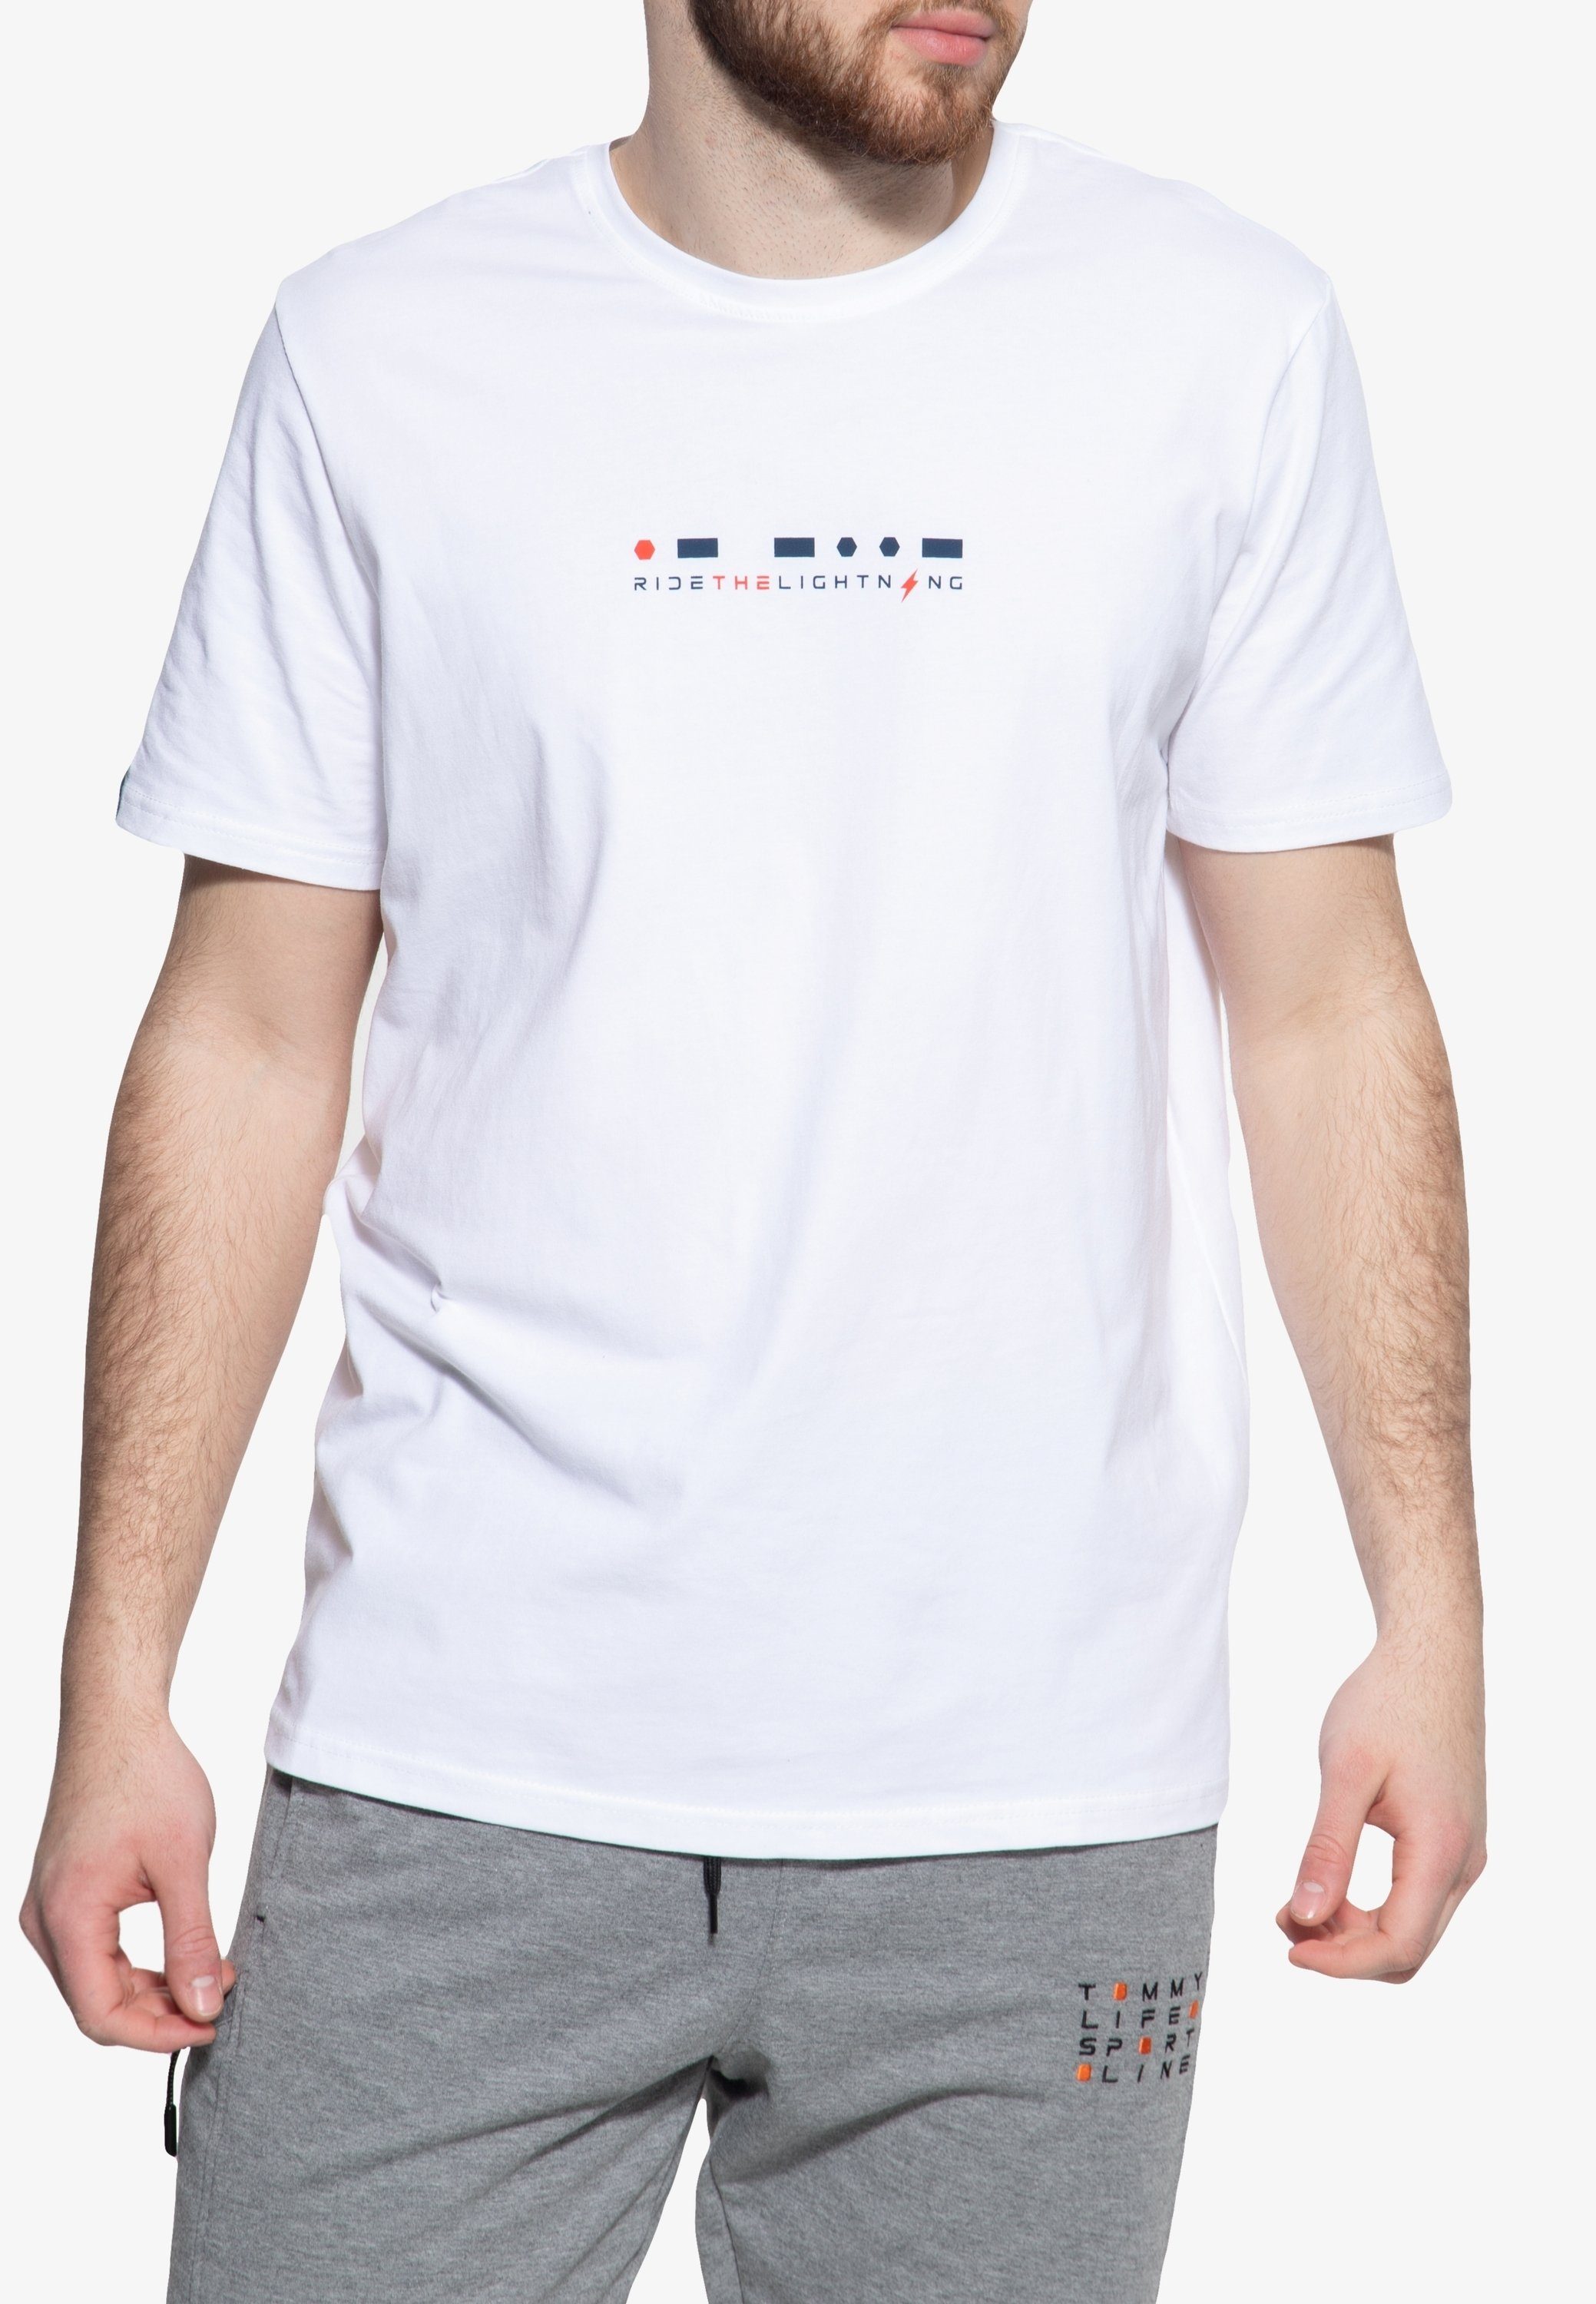 TOMMY LIFE Print-Shirt (1-tlg) mit Logoprint weiß